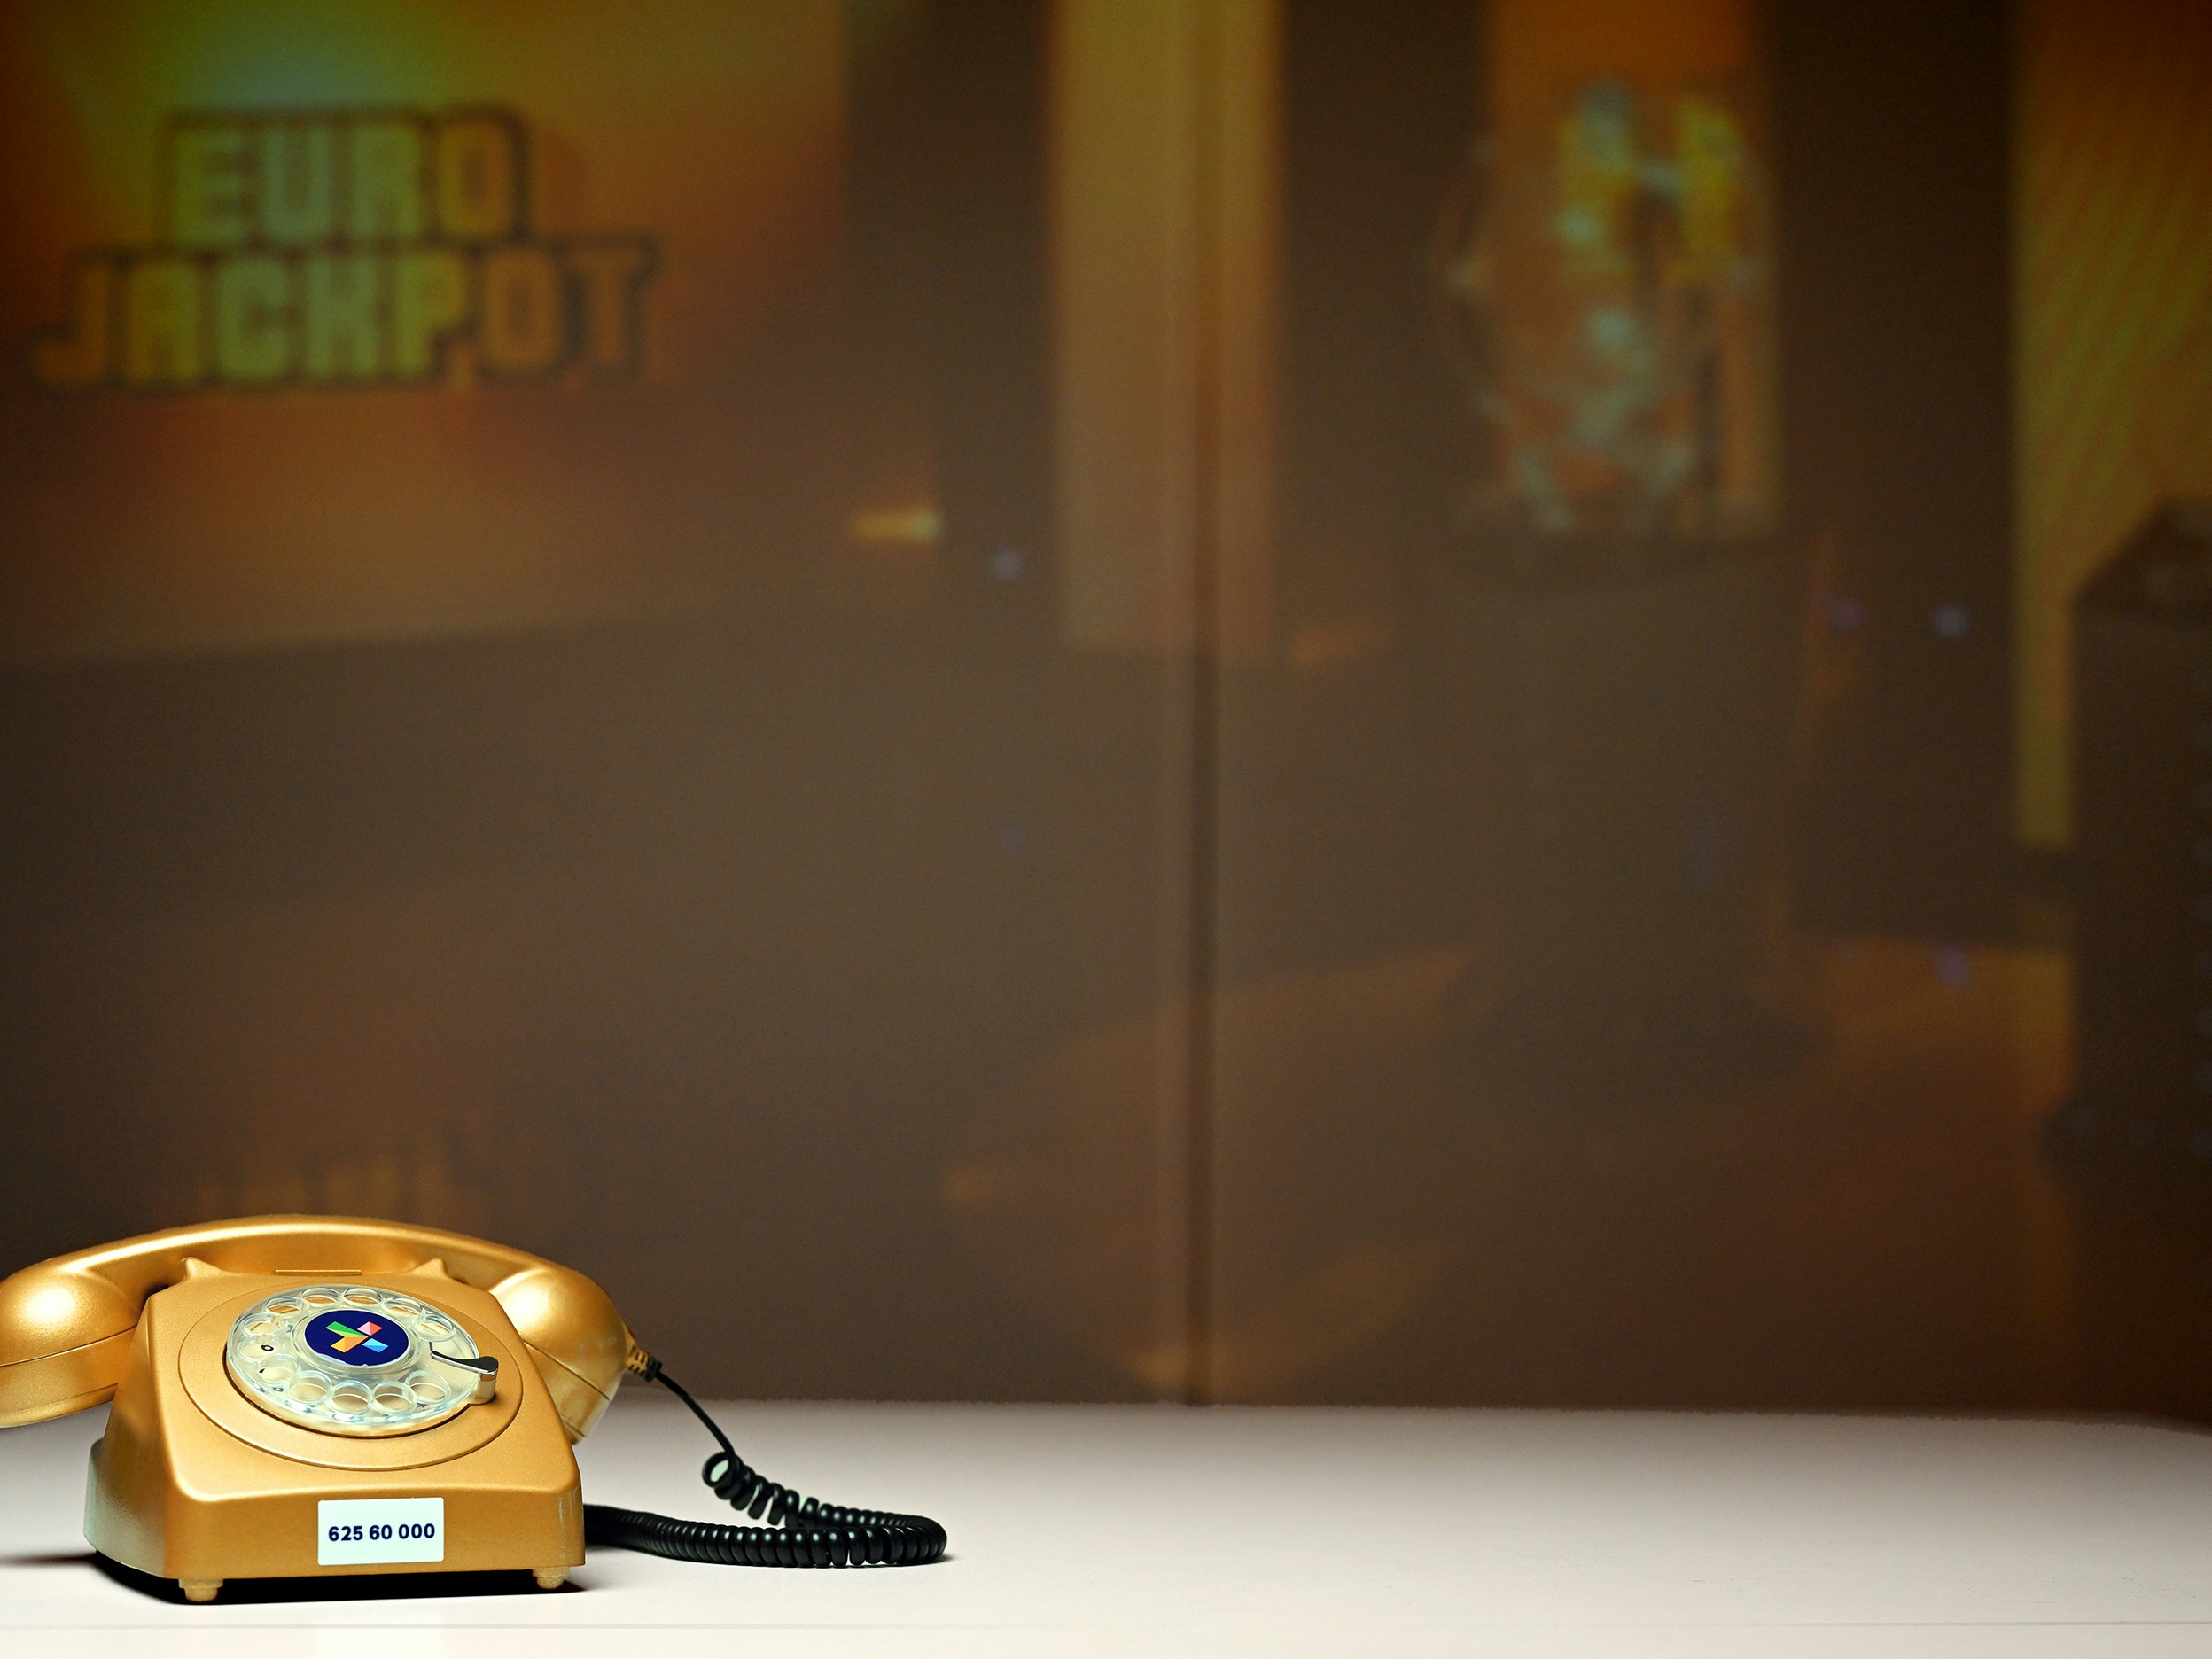 Bilde av "Telefonen fra Hamar" - i gullfarge. Eurojackpot-bilde i bakgrunnen.